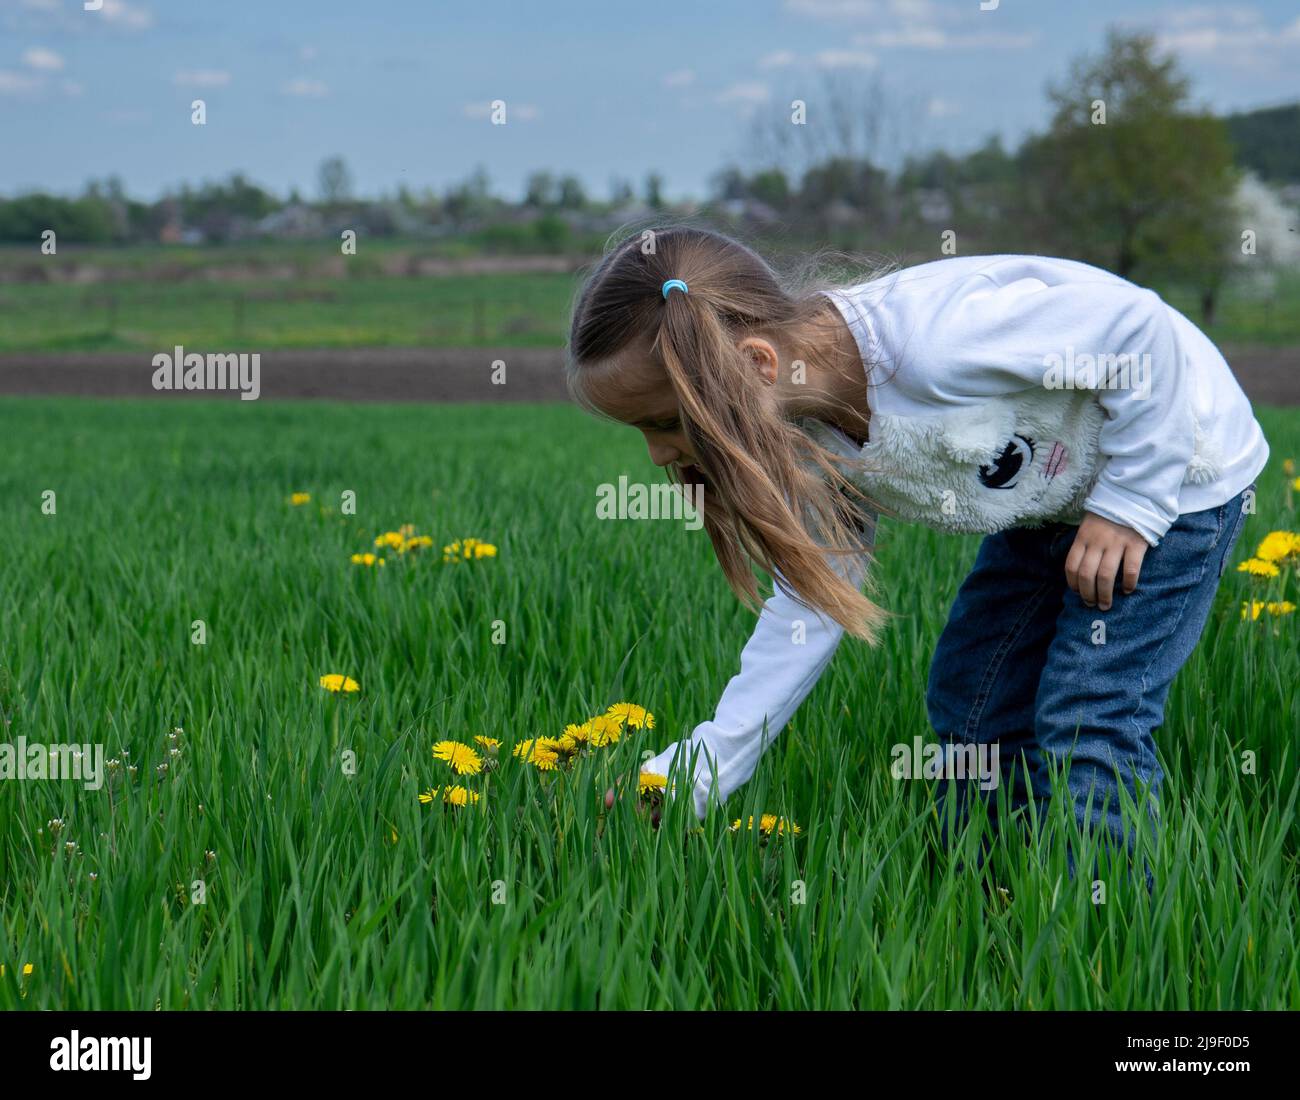 Nettes kleines Mädchen pflücken gelbe Blumen auf einem grünen Feld an sonnigen Tag Stockfoto